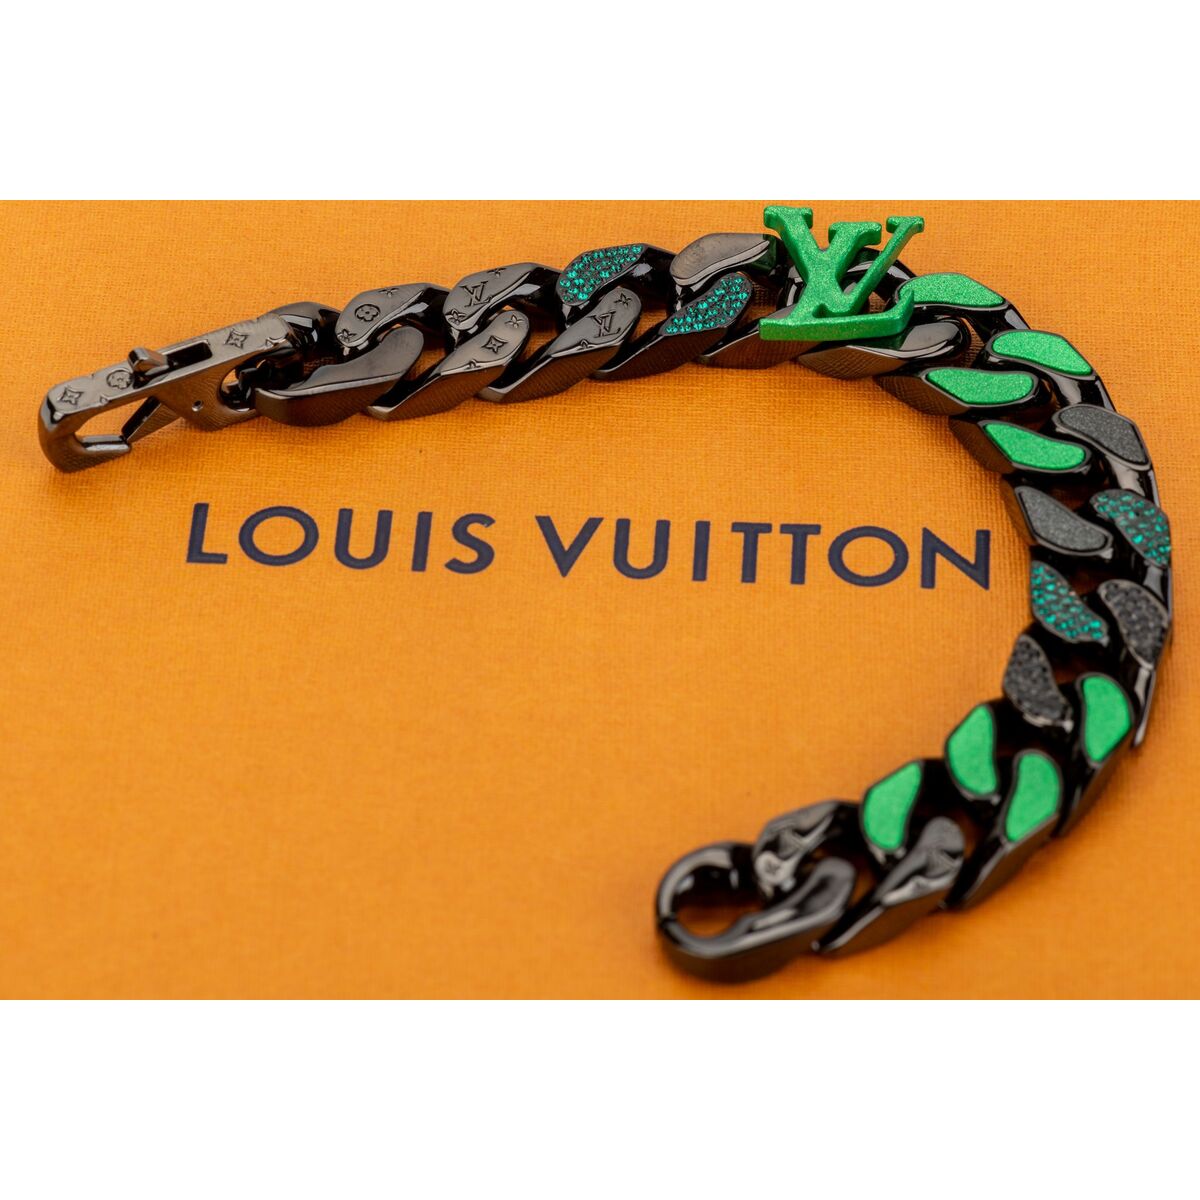 Vuitton Virgil Abloh Link Bracelet